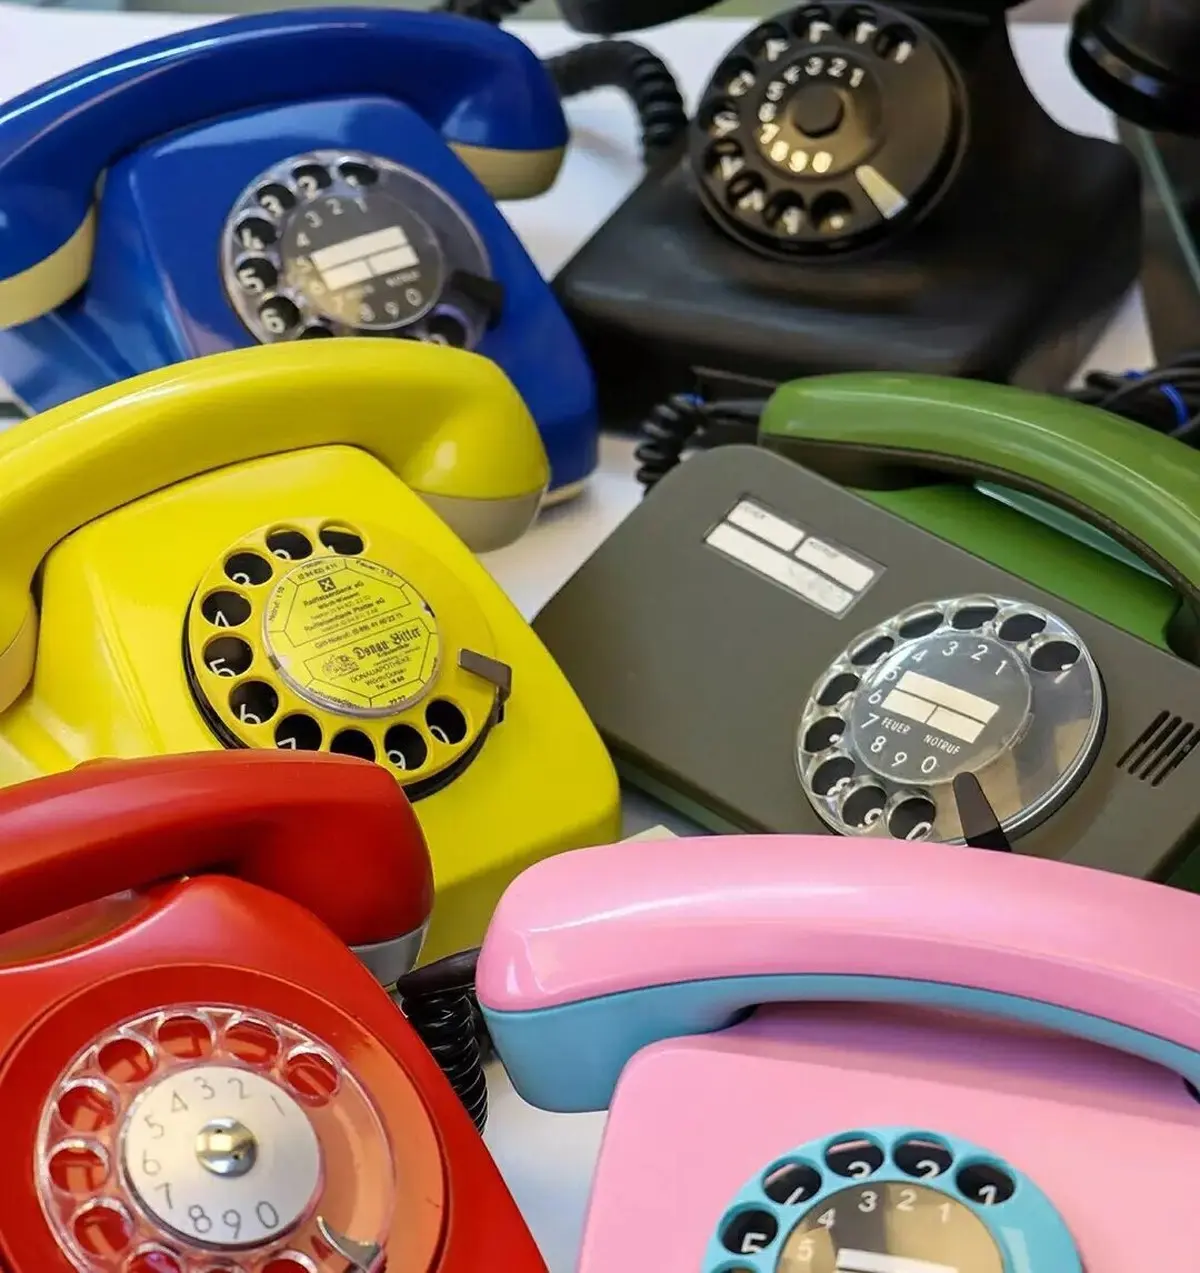 قیمت تلفن قبل از تحول در مخابرات در دهه شصت+ویدئو 